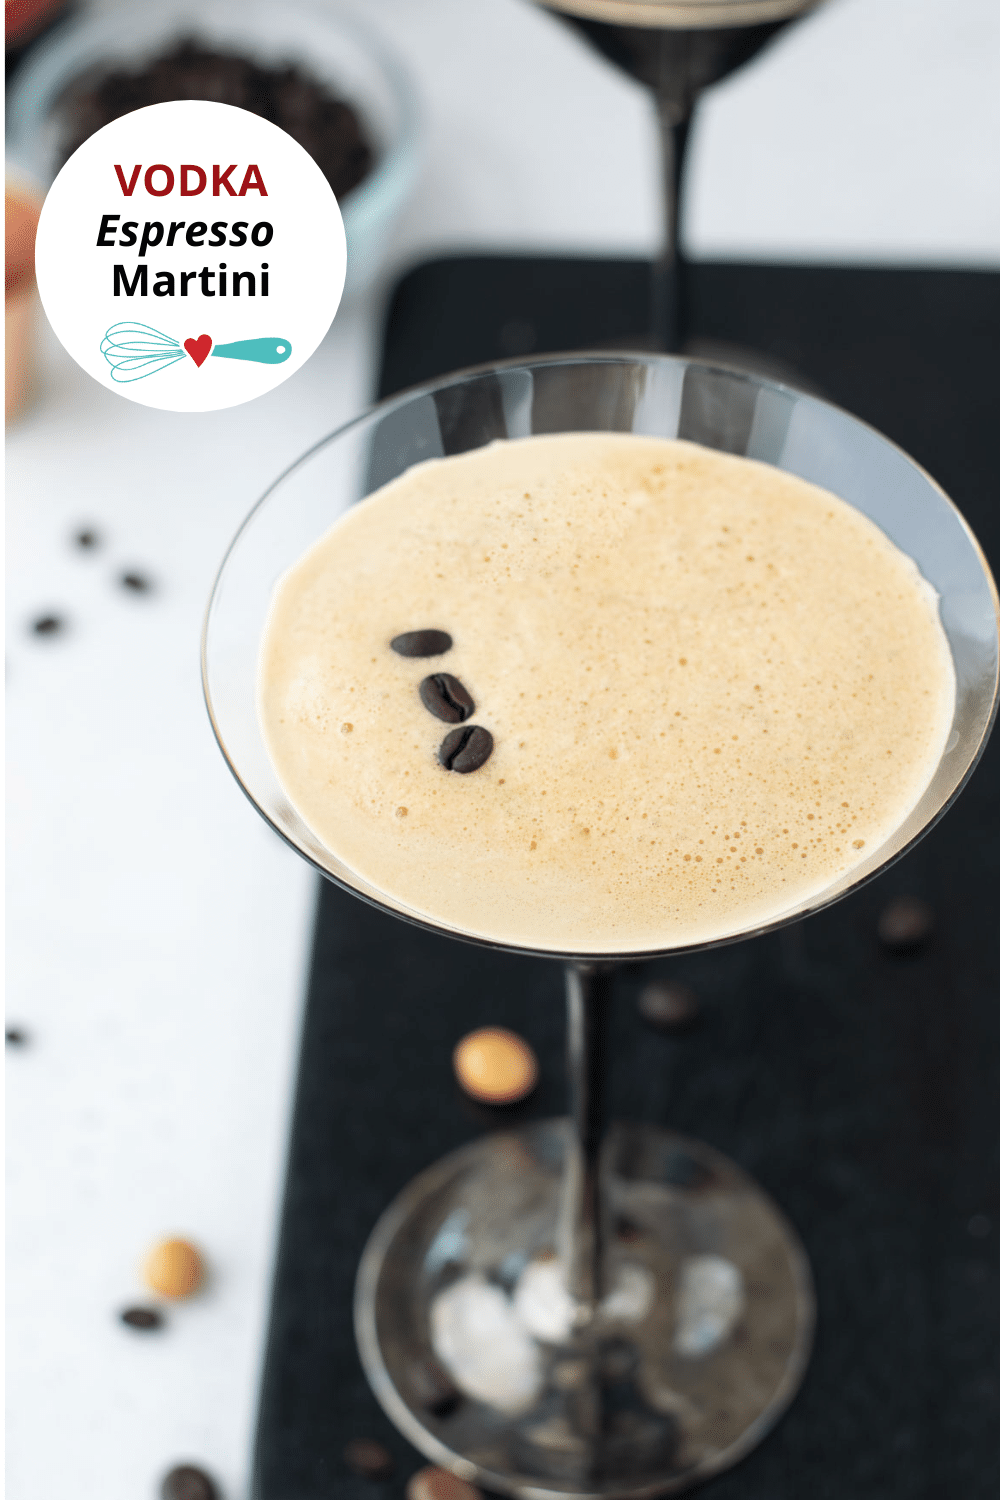 Vodka Espresso Martini